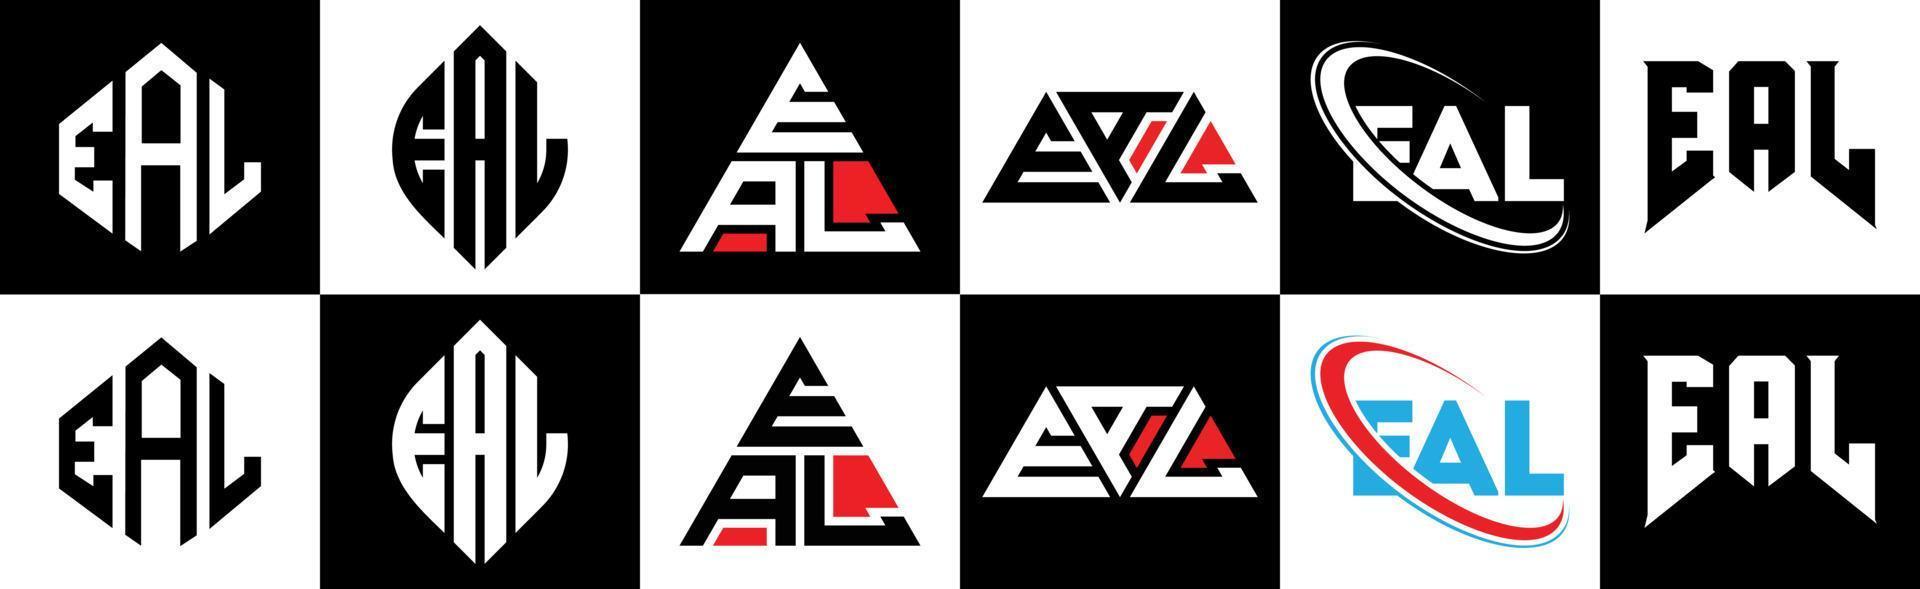 Eal-Buchstaben-Logo-Design in sechs Stilen. Echtes Polygon, Kreis, Dreieck, Sechseck, flacher und einfacher Stil mit schwarz-weißem Buchstabenlogo in einer Zeichenfläche. eal minimalistisches und klassisches Logo vektor